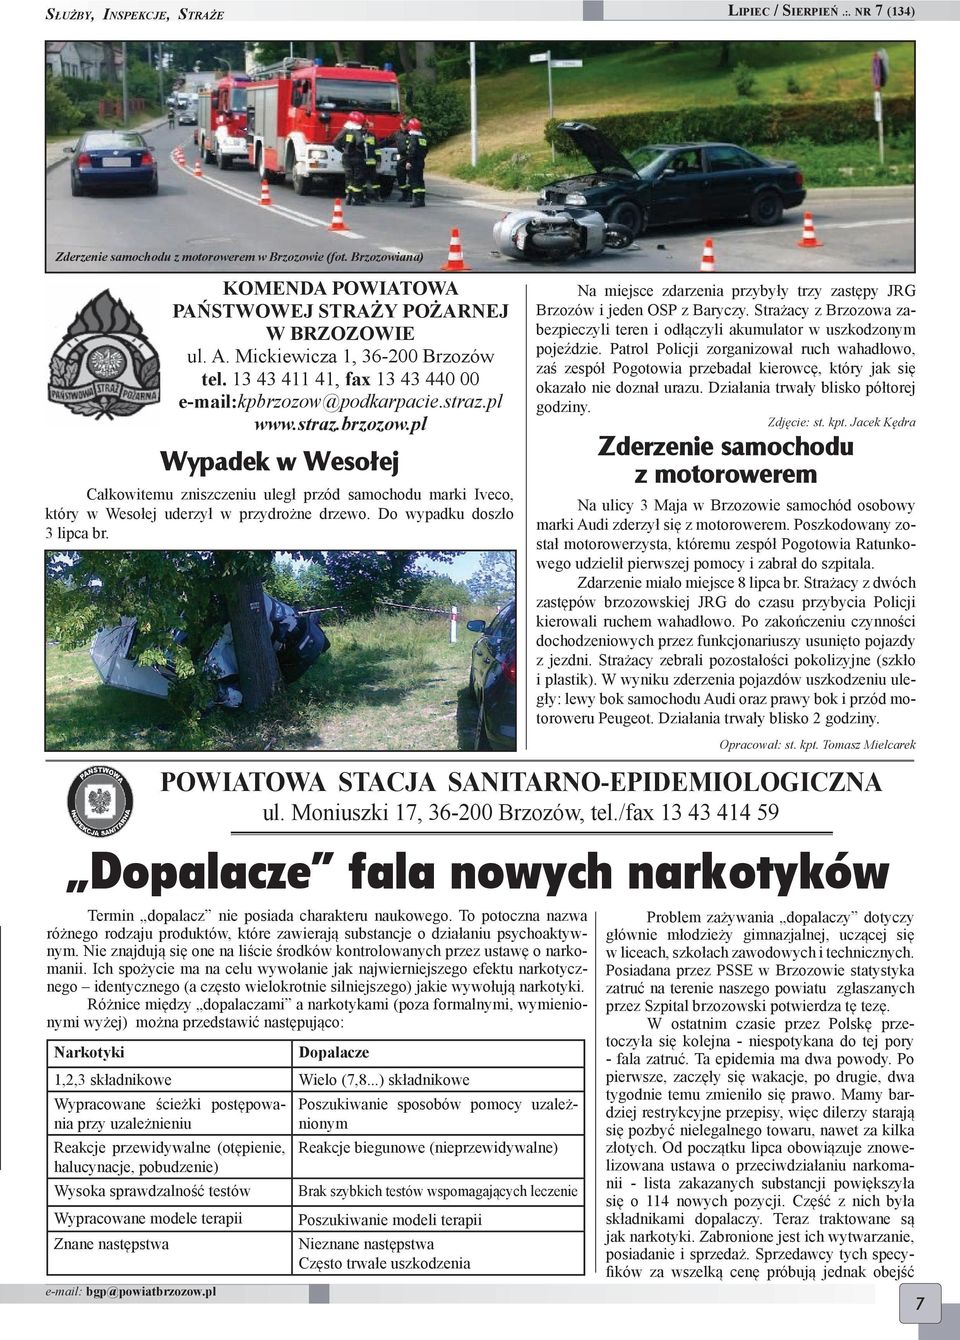 podkarpacie.straz.pl www.straz.brzozow.pl Wypadek w Wesołej Całkowitemu zniszczeniu uległ przód samochodu marki Iveco, który w Wesołej uderzył w przydrożne drzewo. Do wypadku doszło 3 lipca br.